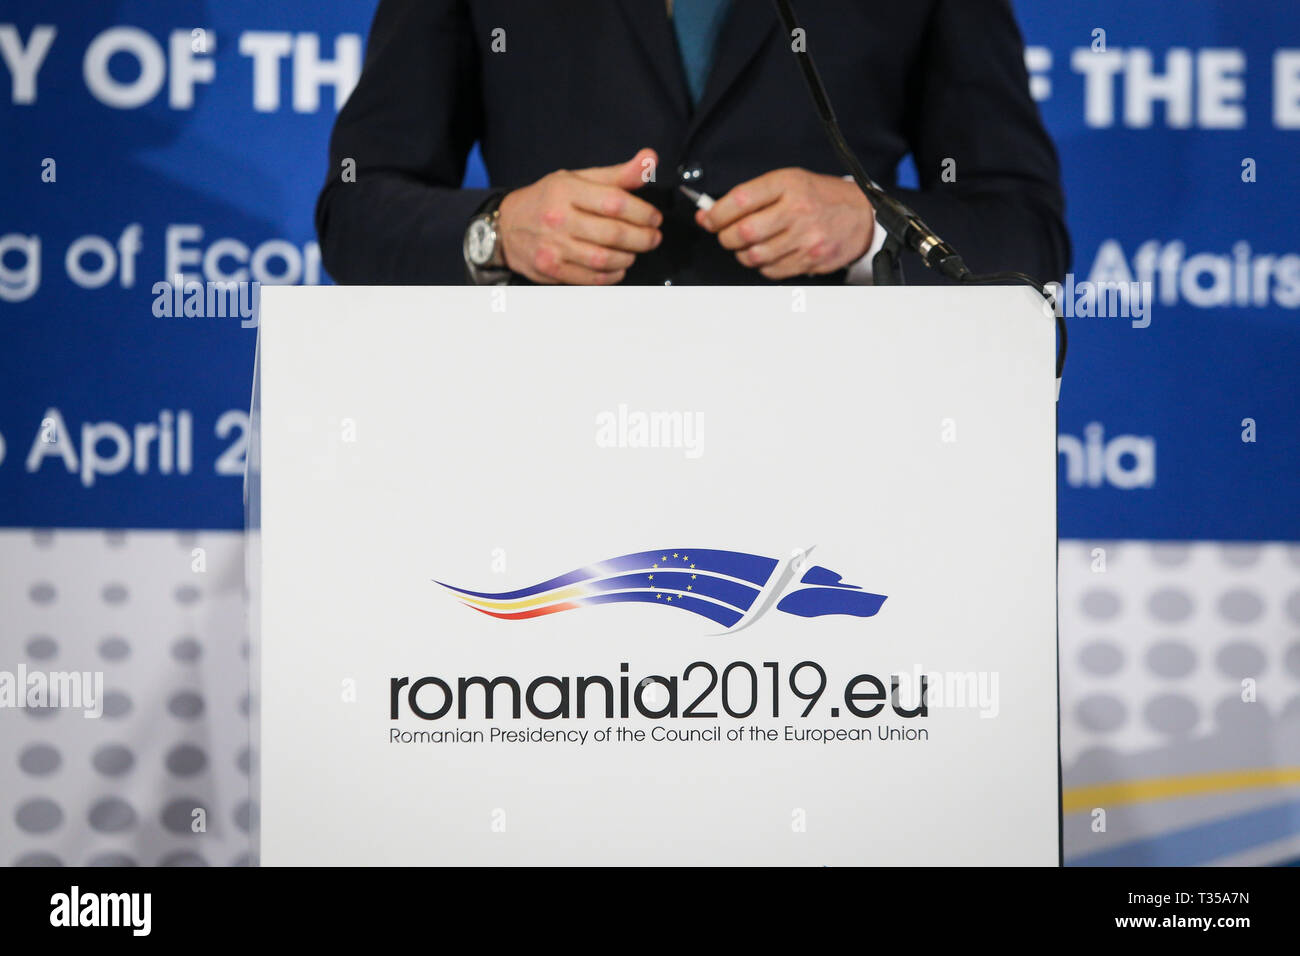 Bucarest, Rumania - Abril 6, 2019: el logotipo de la Presidencia rumana del Consejo de la Unión Europea durante una conferencia de prensa Foto de stock